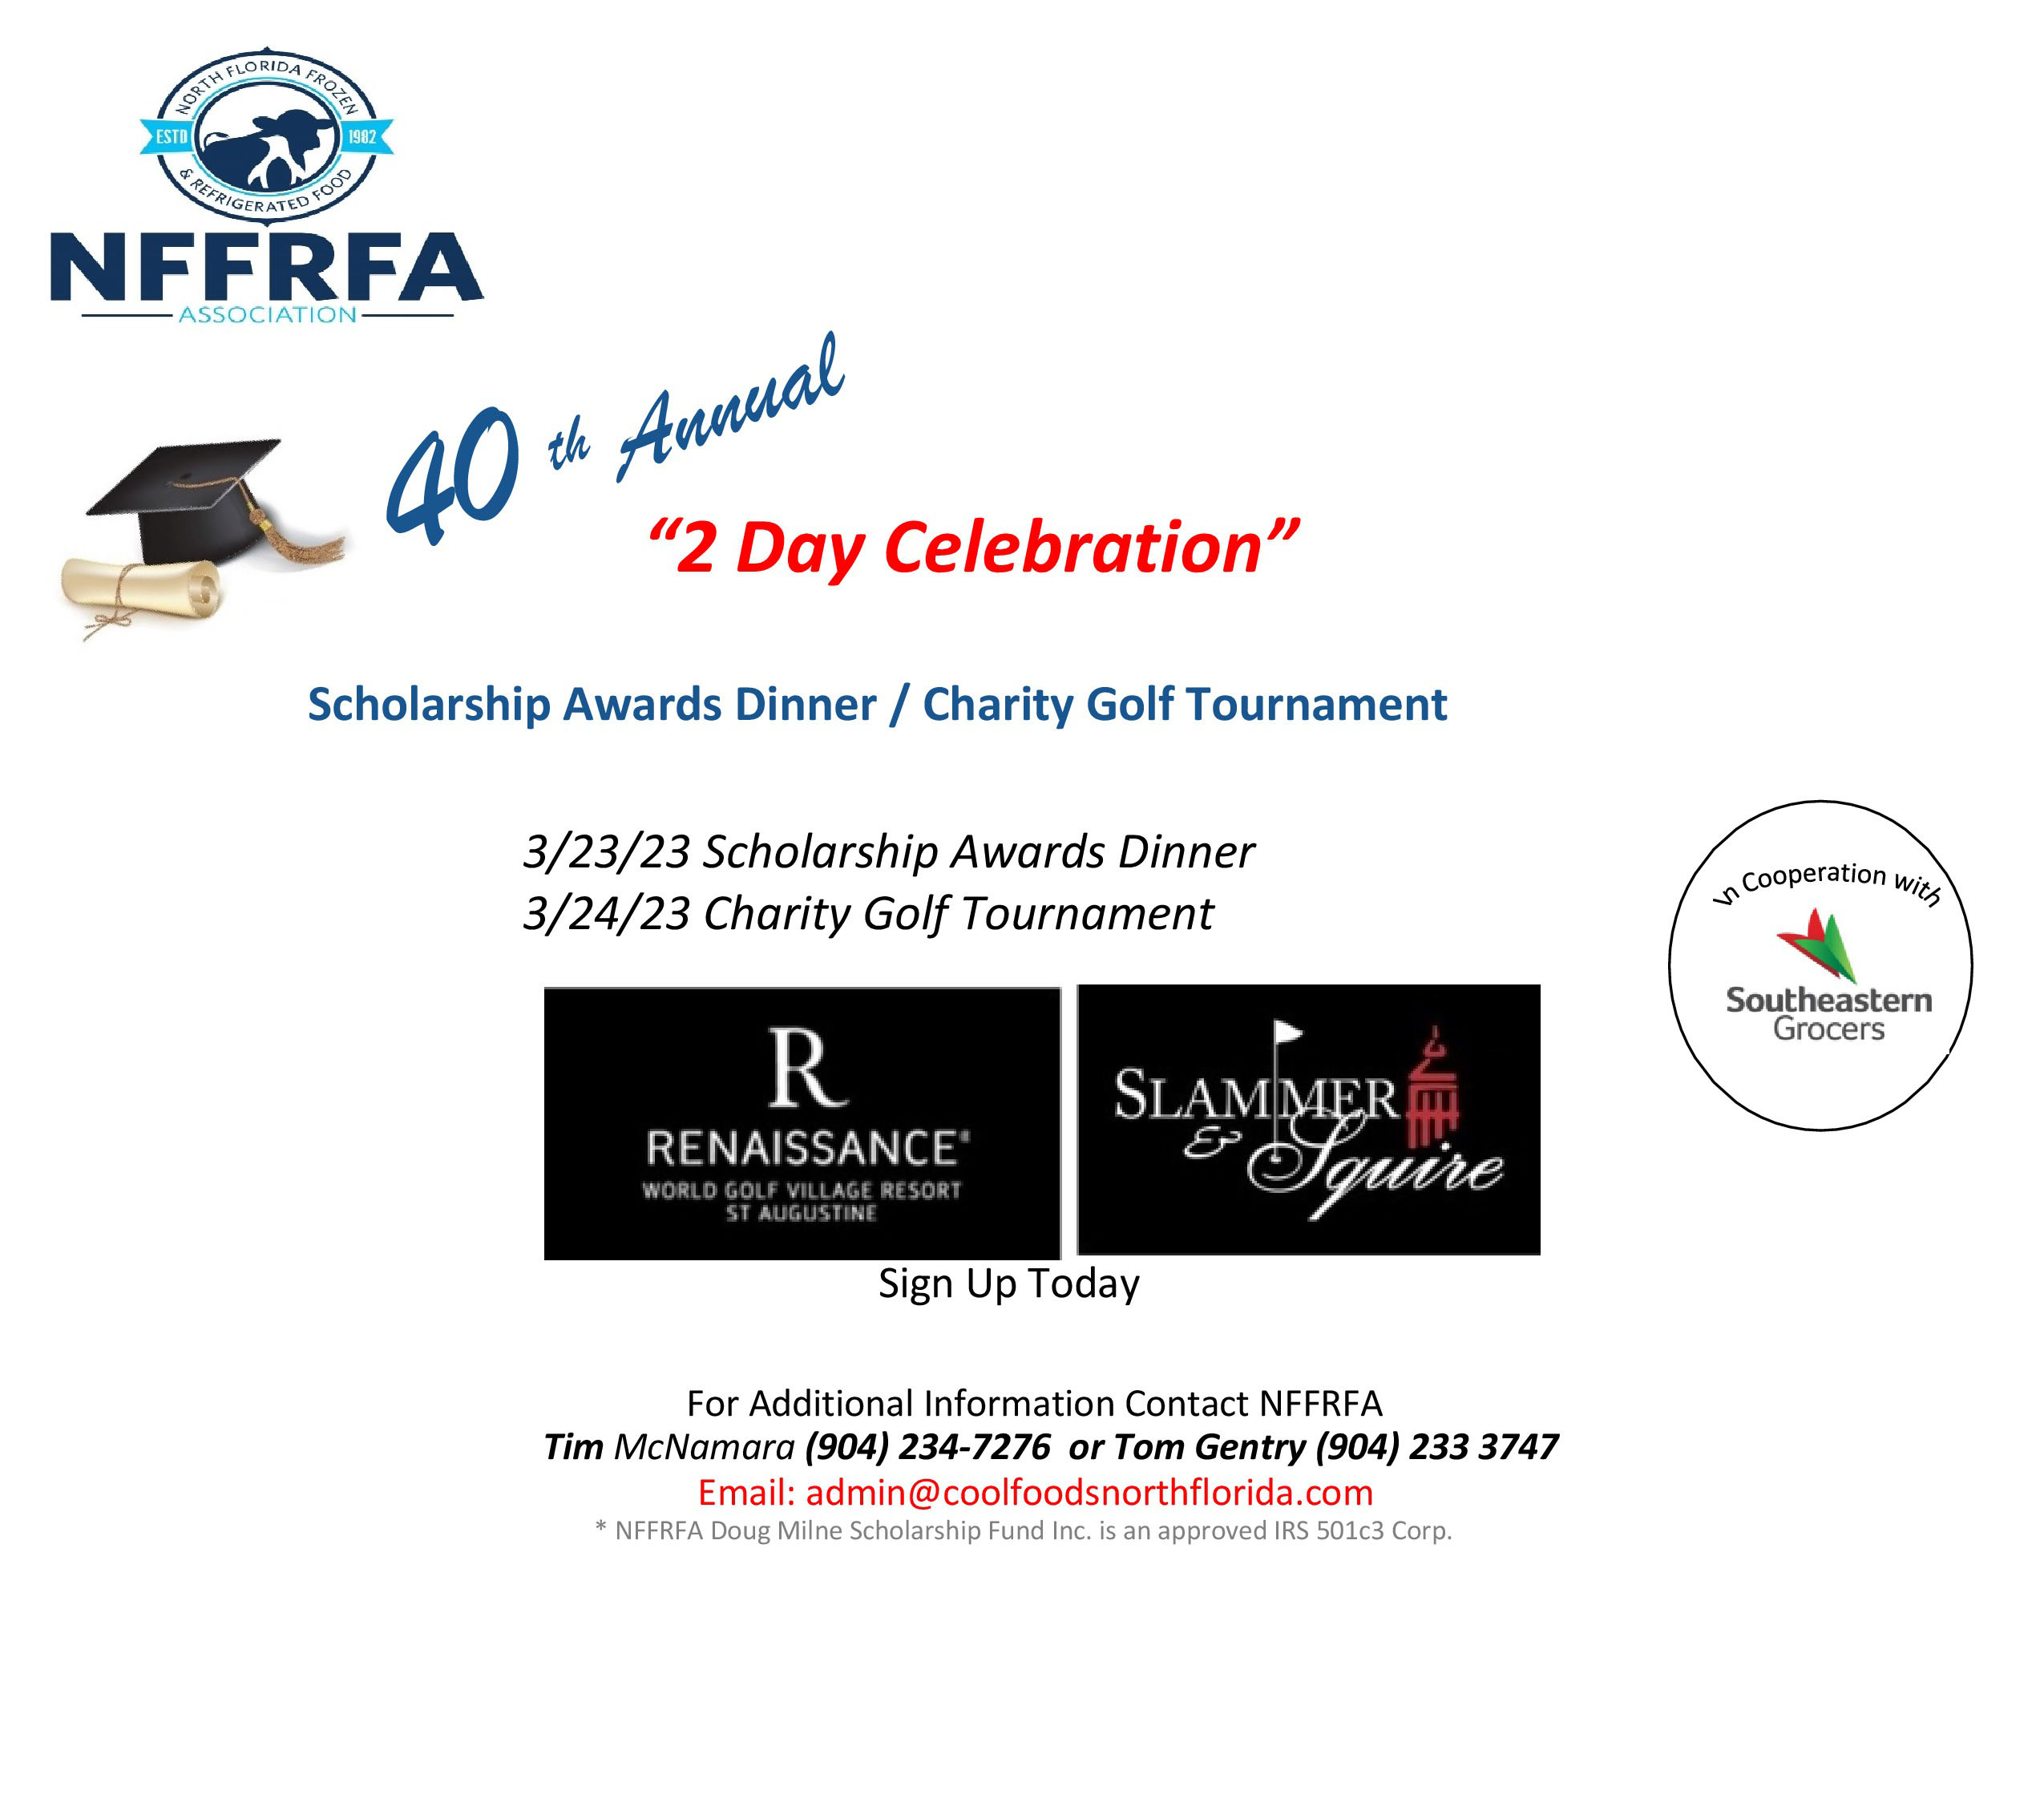 NFFRFA 40th Annual Celebration